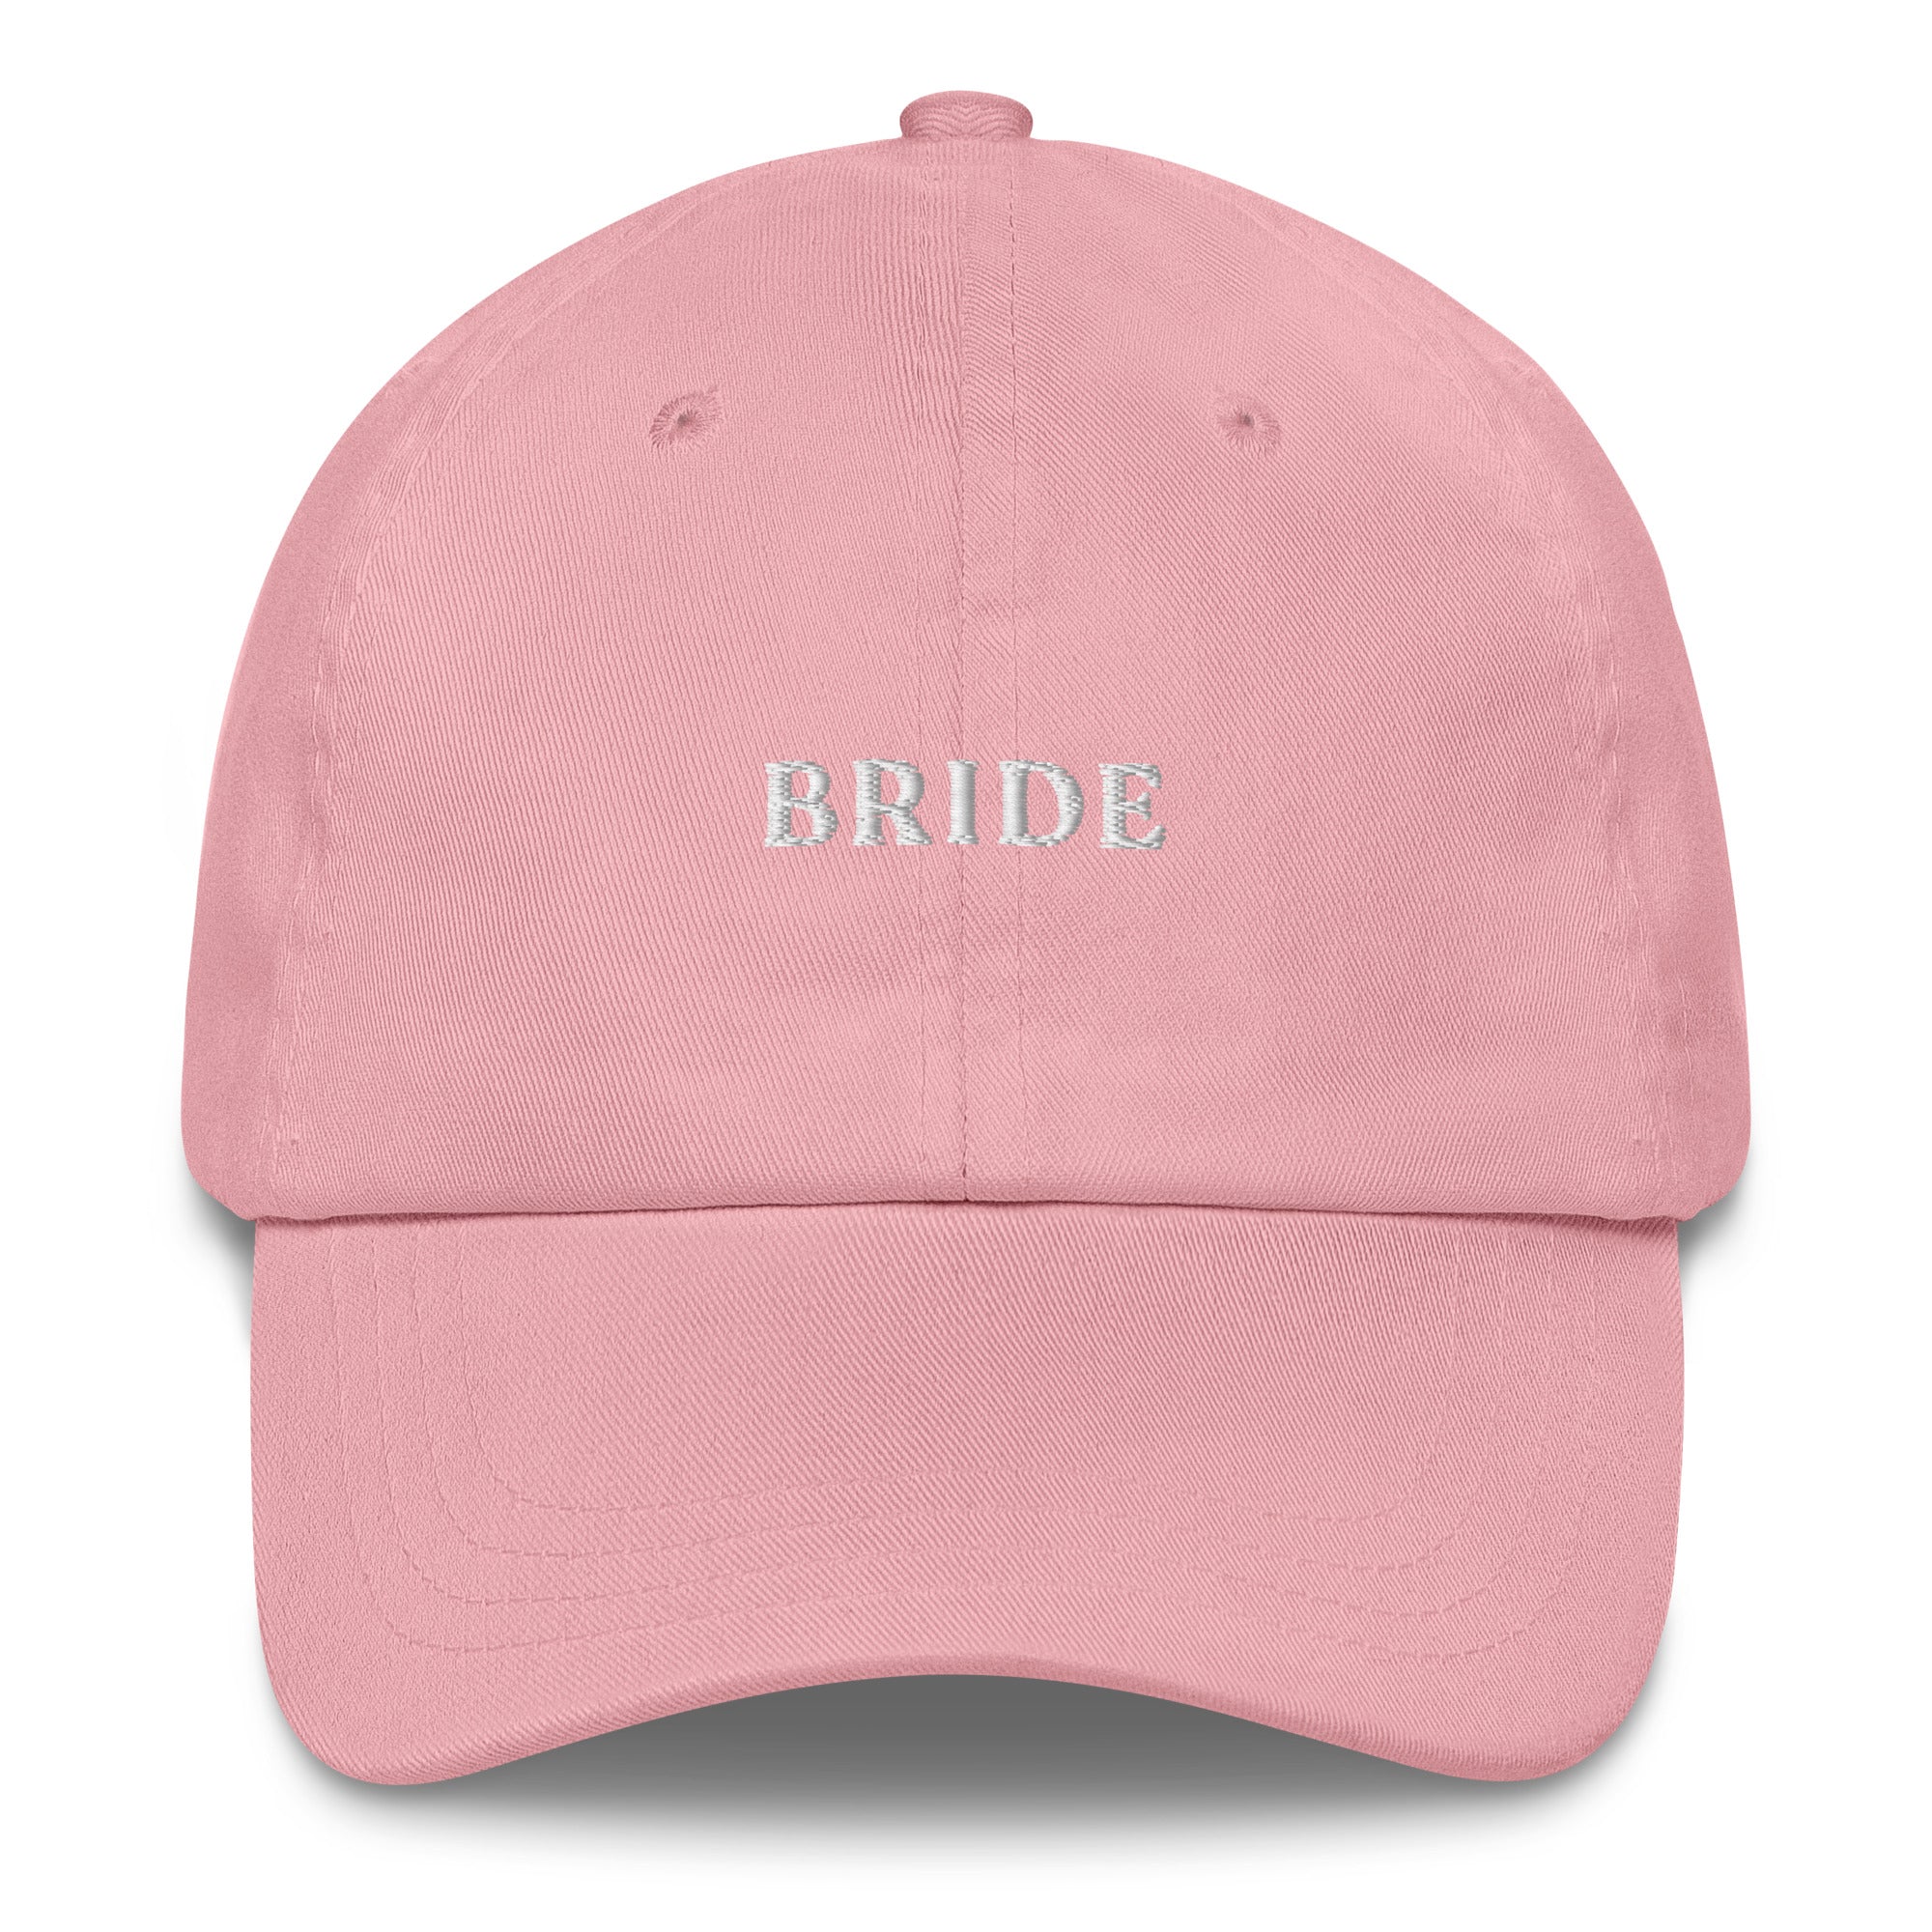 Bride - Cap